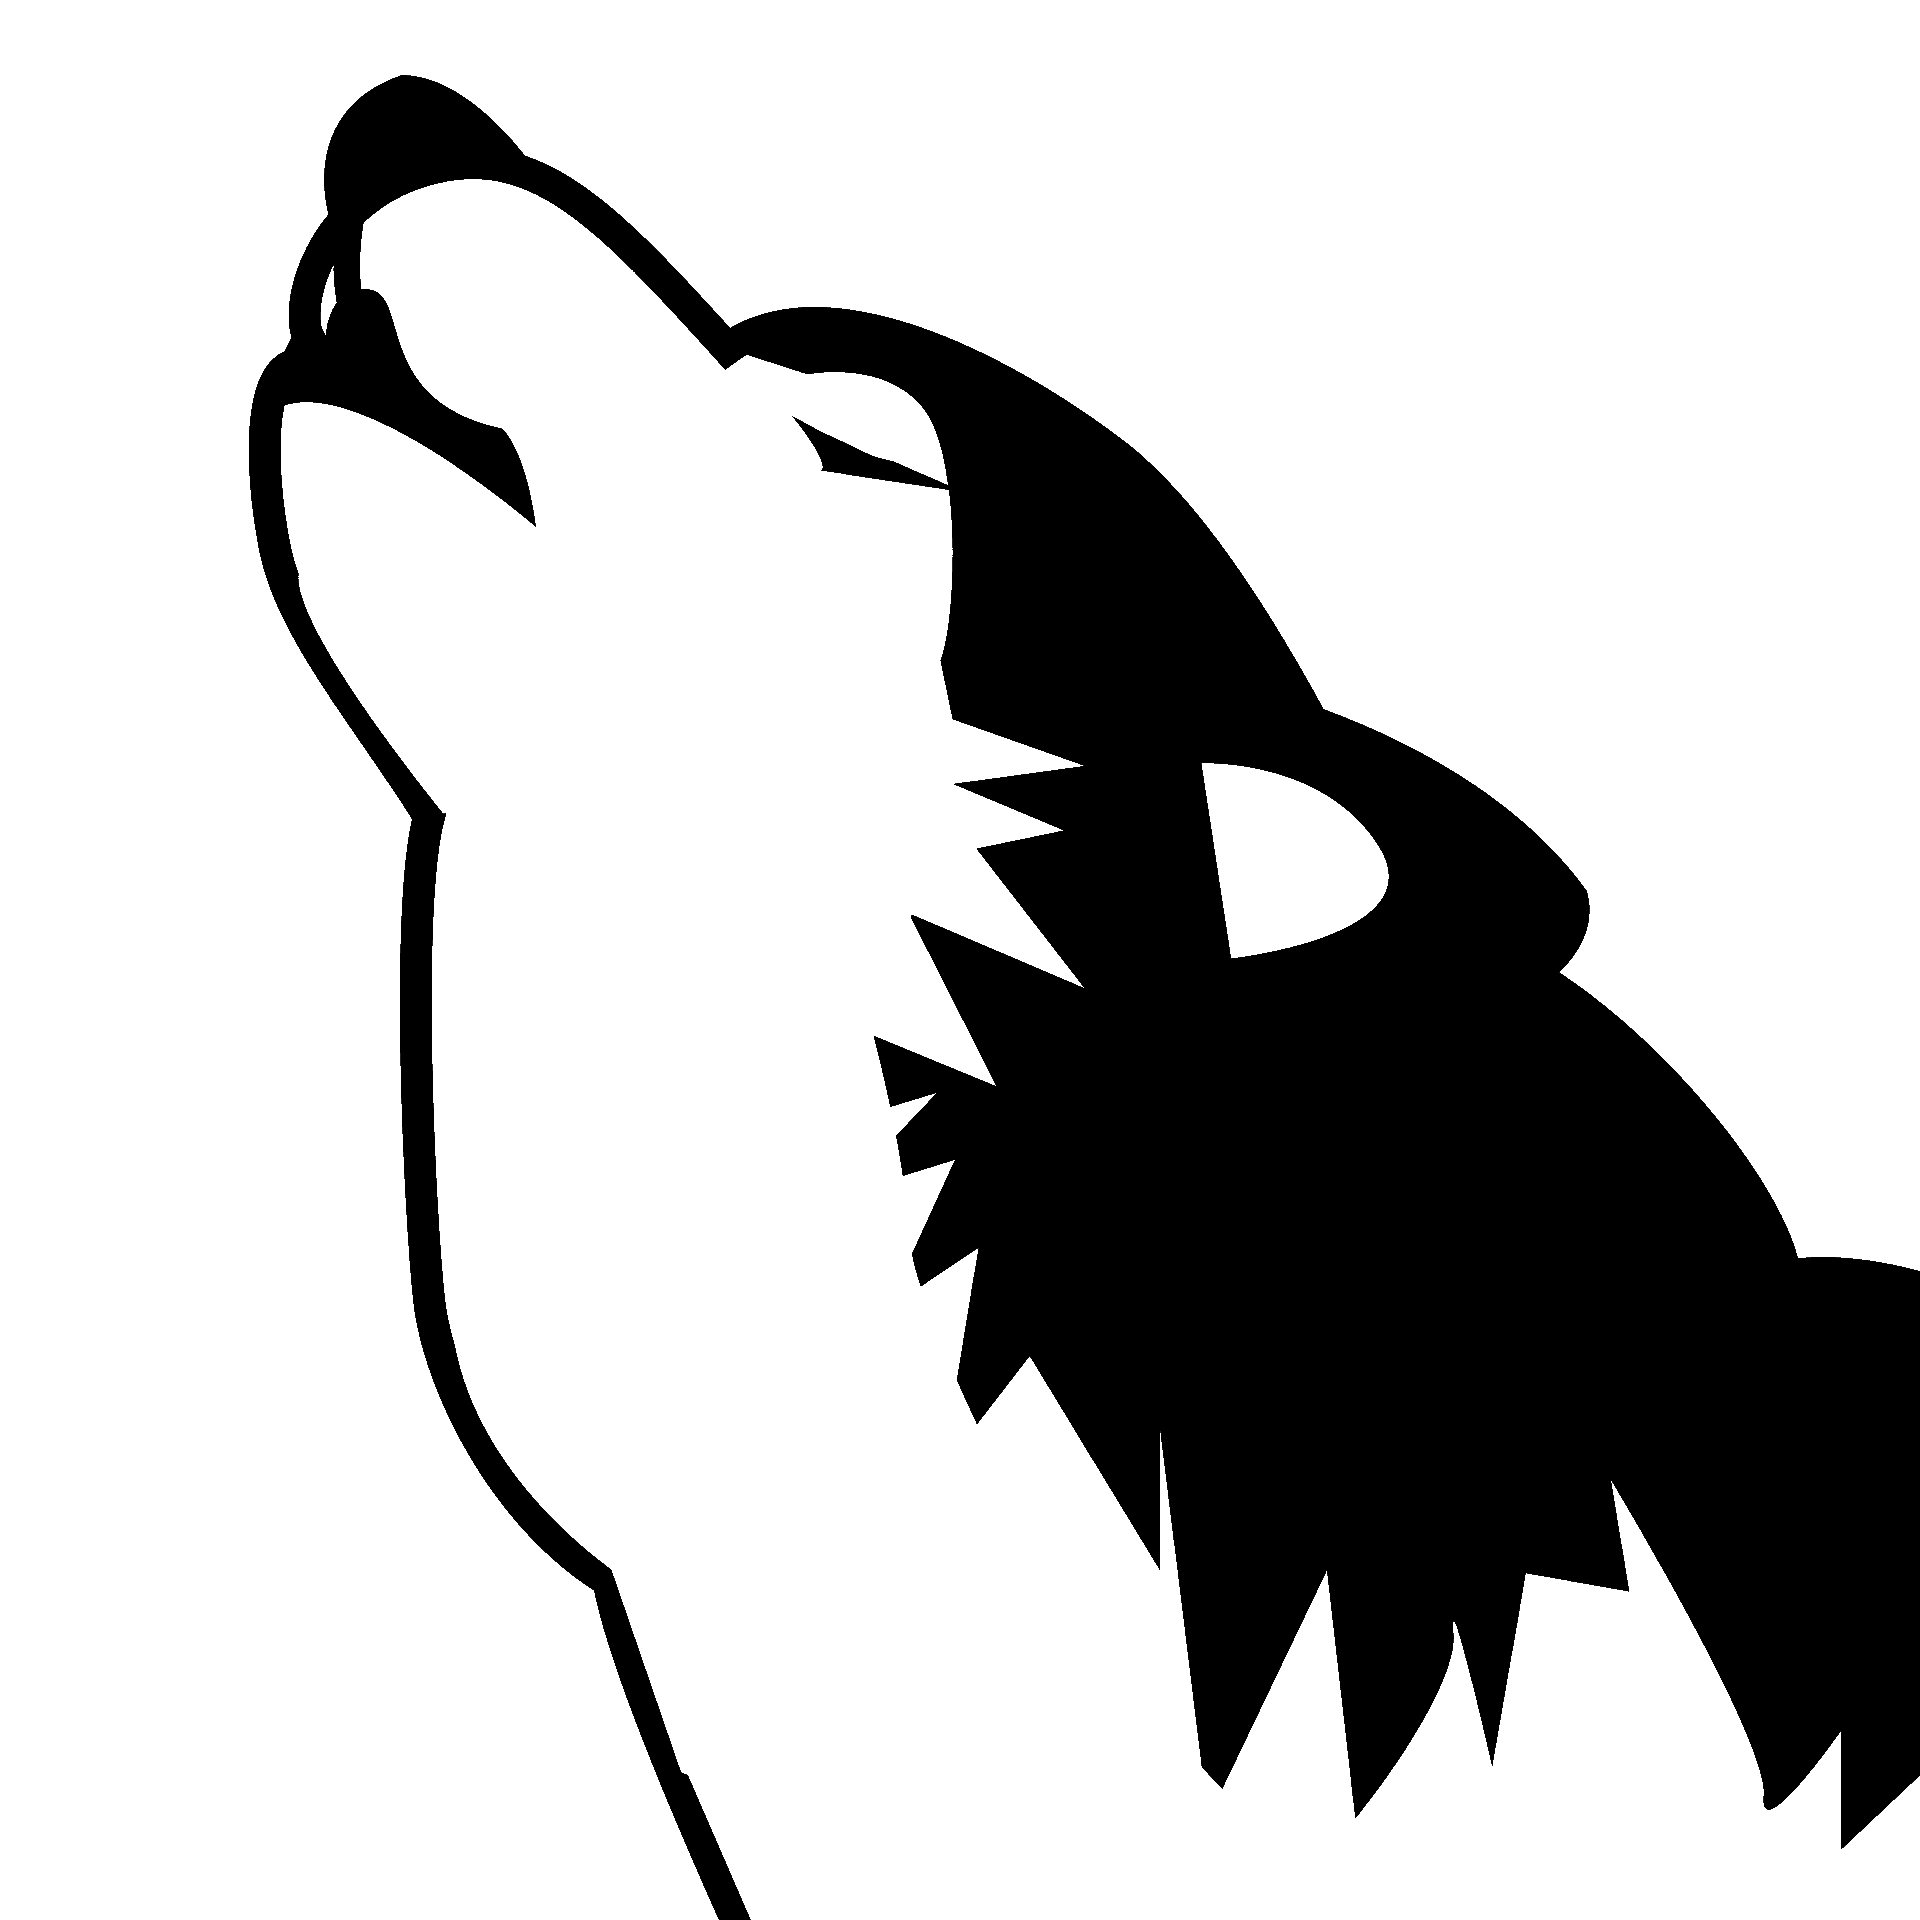 Página para colorear de un lobo de estilo de dibujos animados